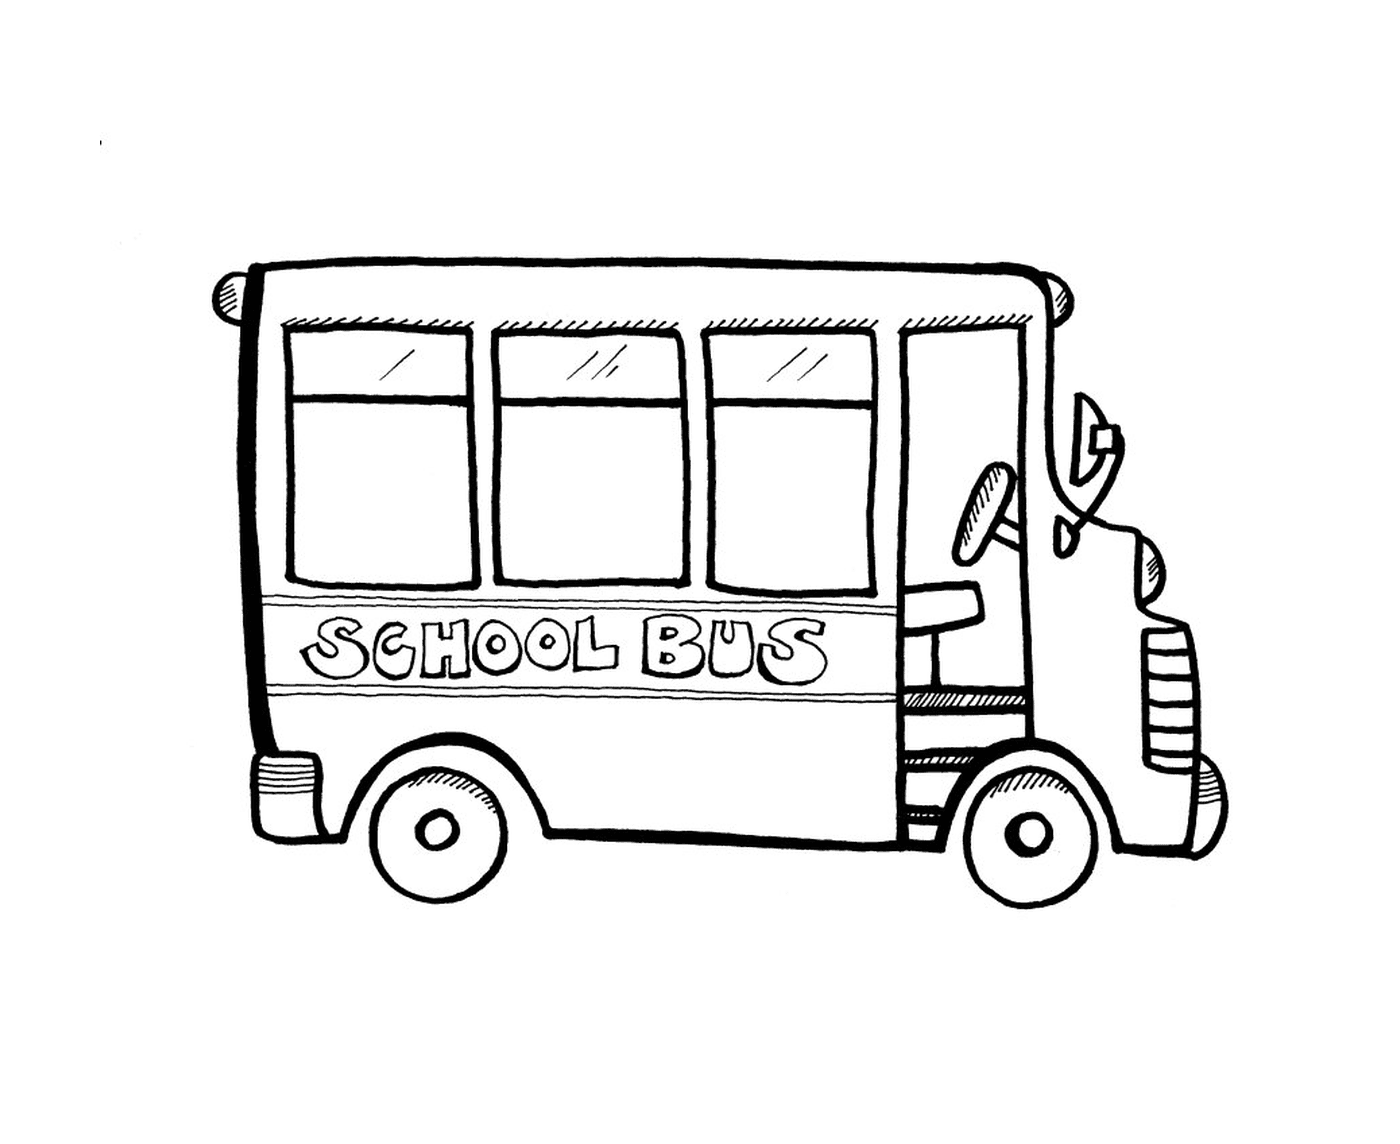   Un bus scolaire pour les enfants 